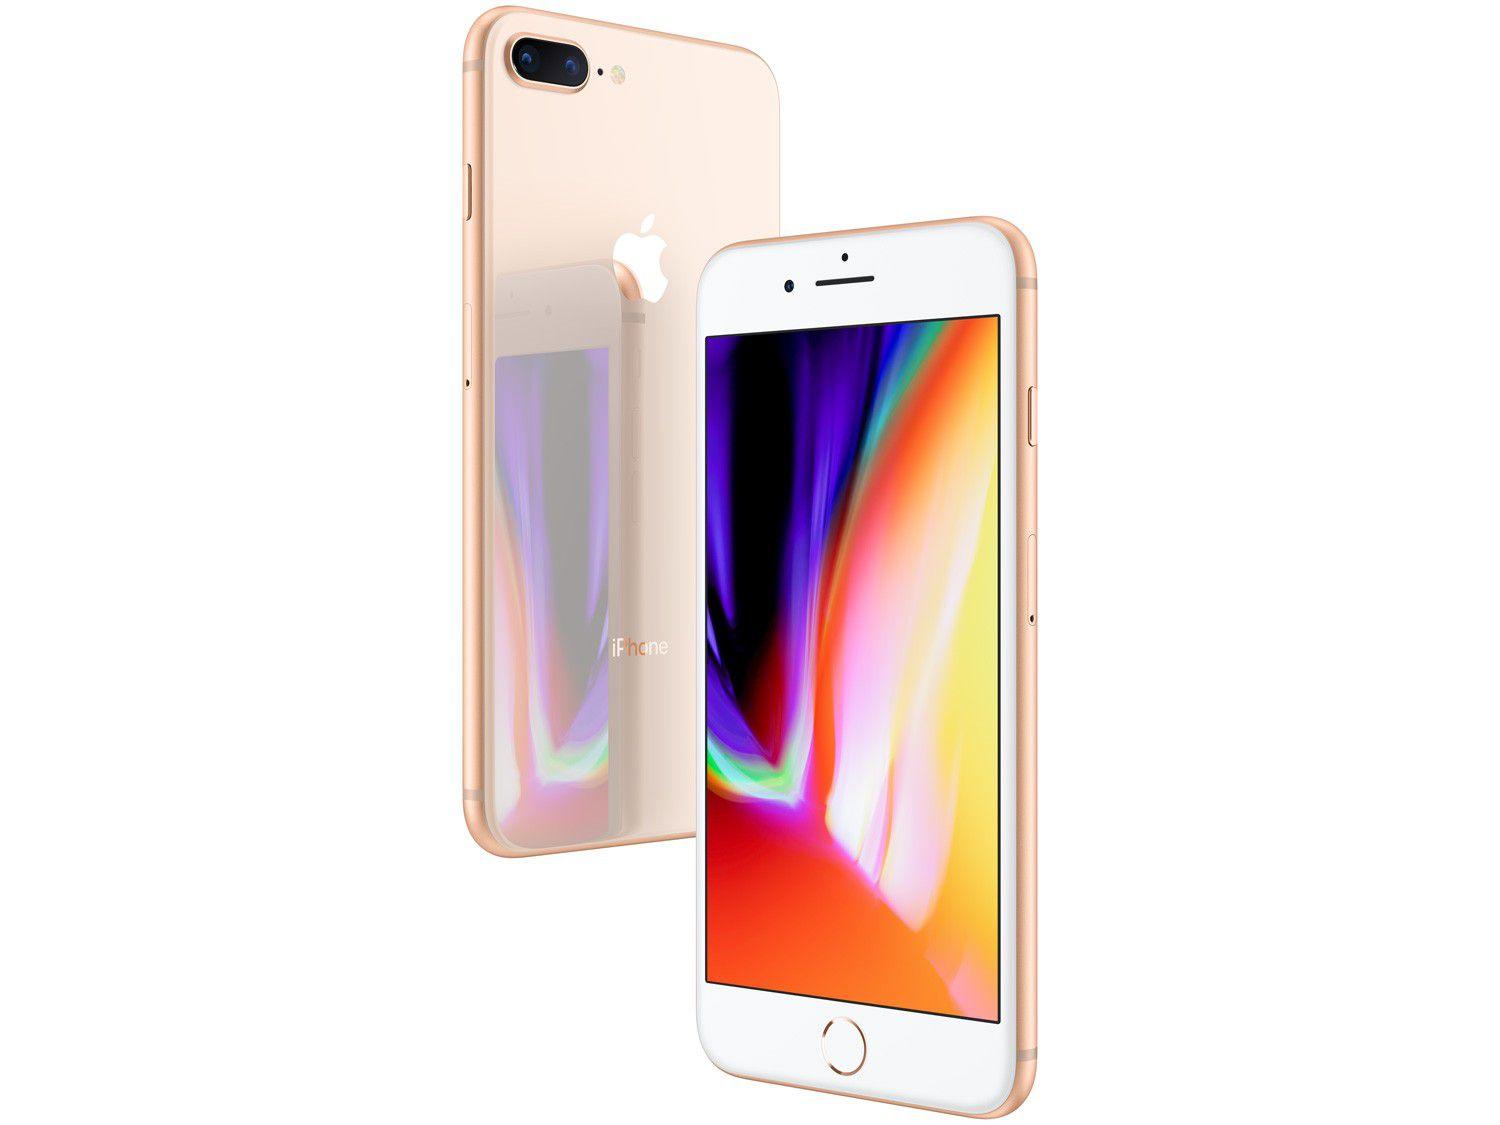 iPhone 8 Plus Apple 64GB Dourado 5,5” 12MP iOS iPhone 8 Plus